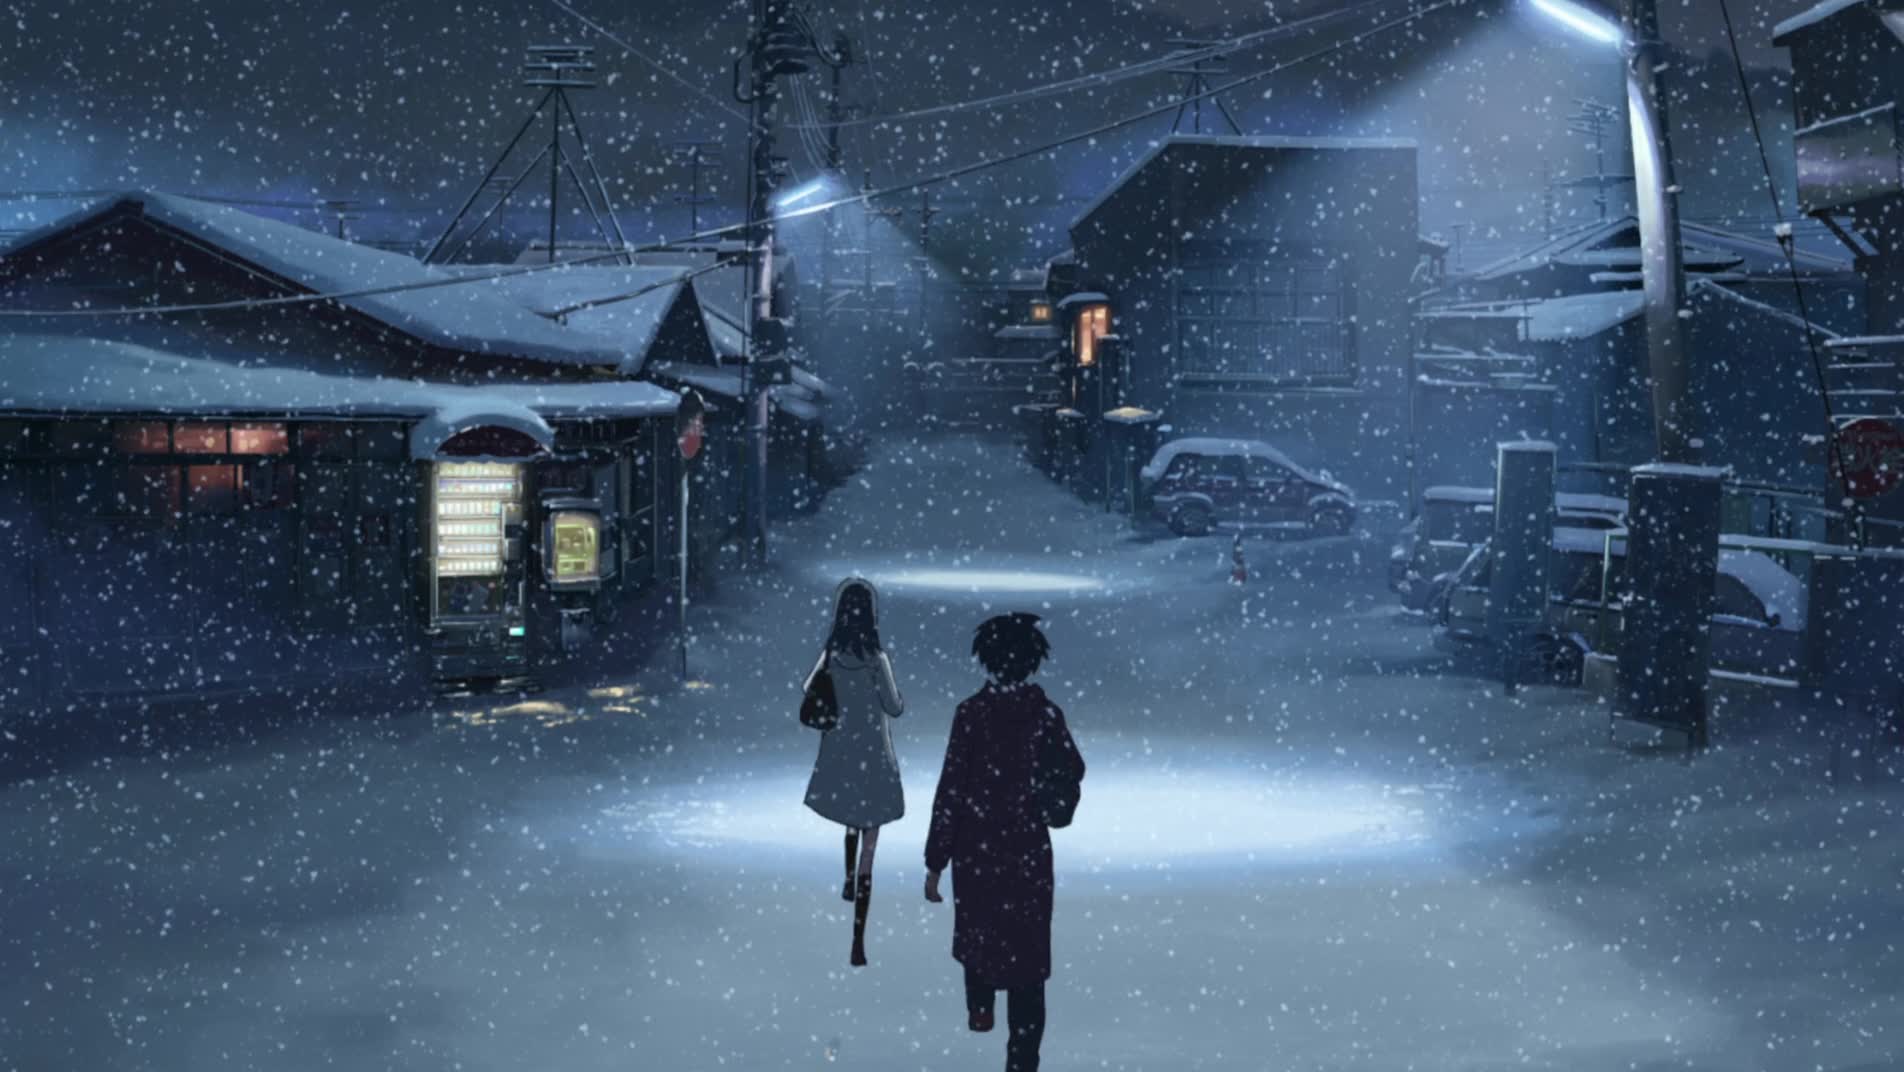 anime snow scenery